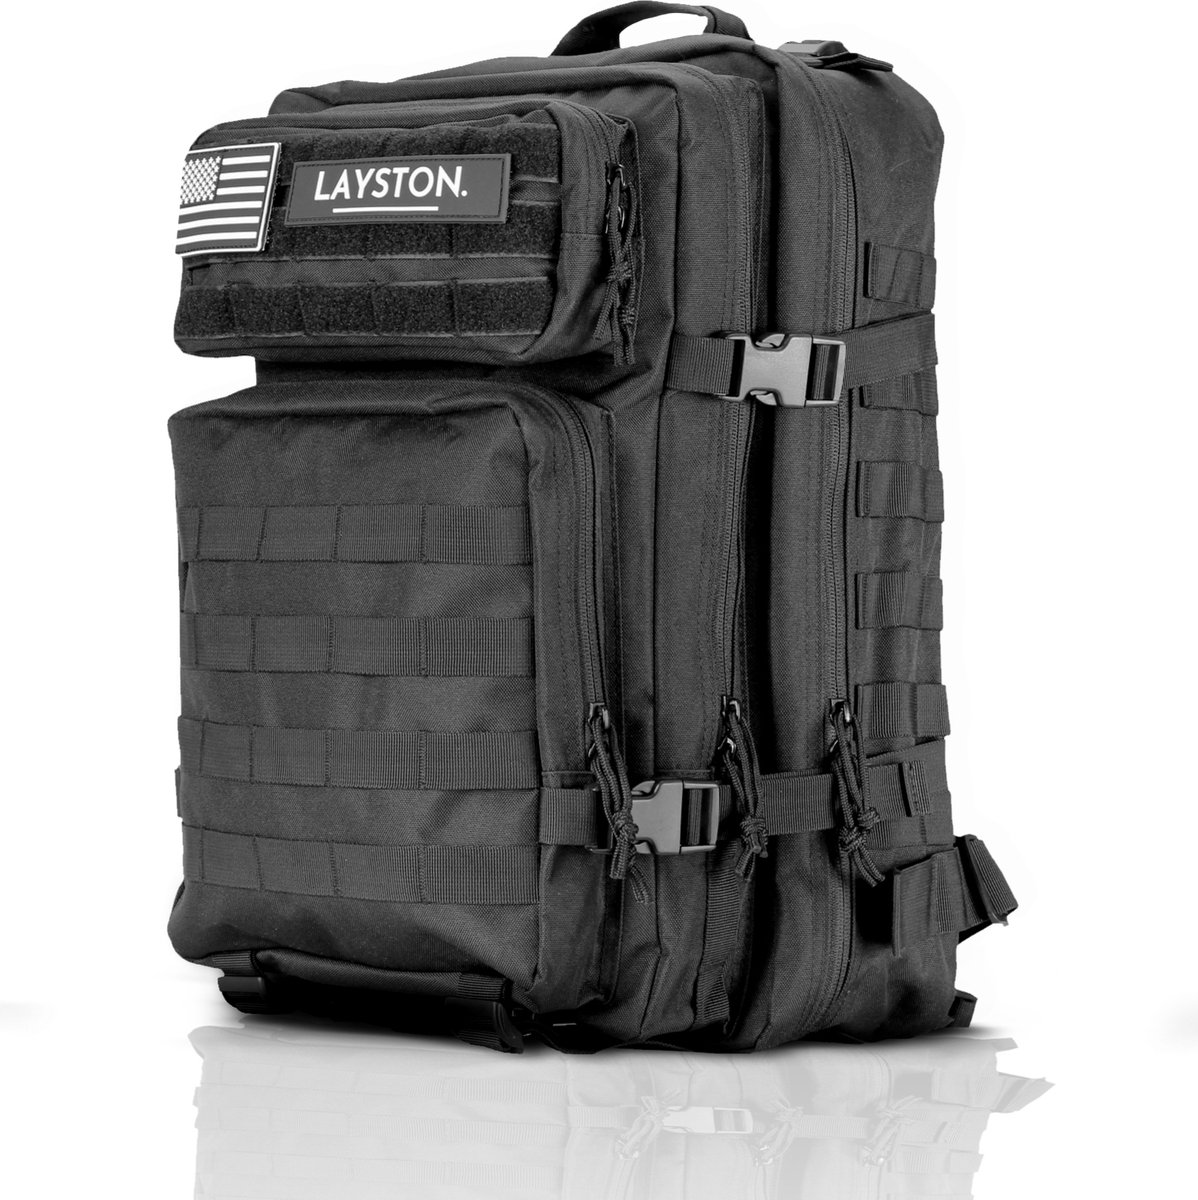 LAYSTON Rugzak 45L Waterdicht - 17 inch Laptoptas - Sporttas - Schooltas - Zwart - Voor Dames en Heren - Tactical Backpack